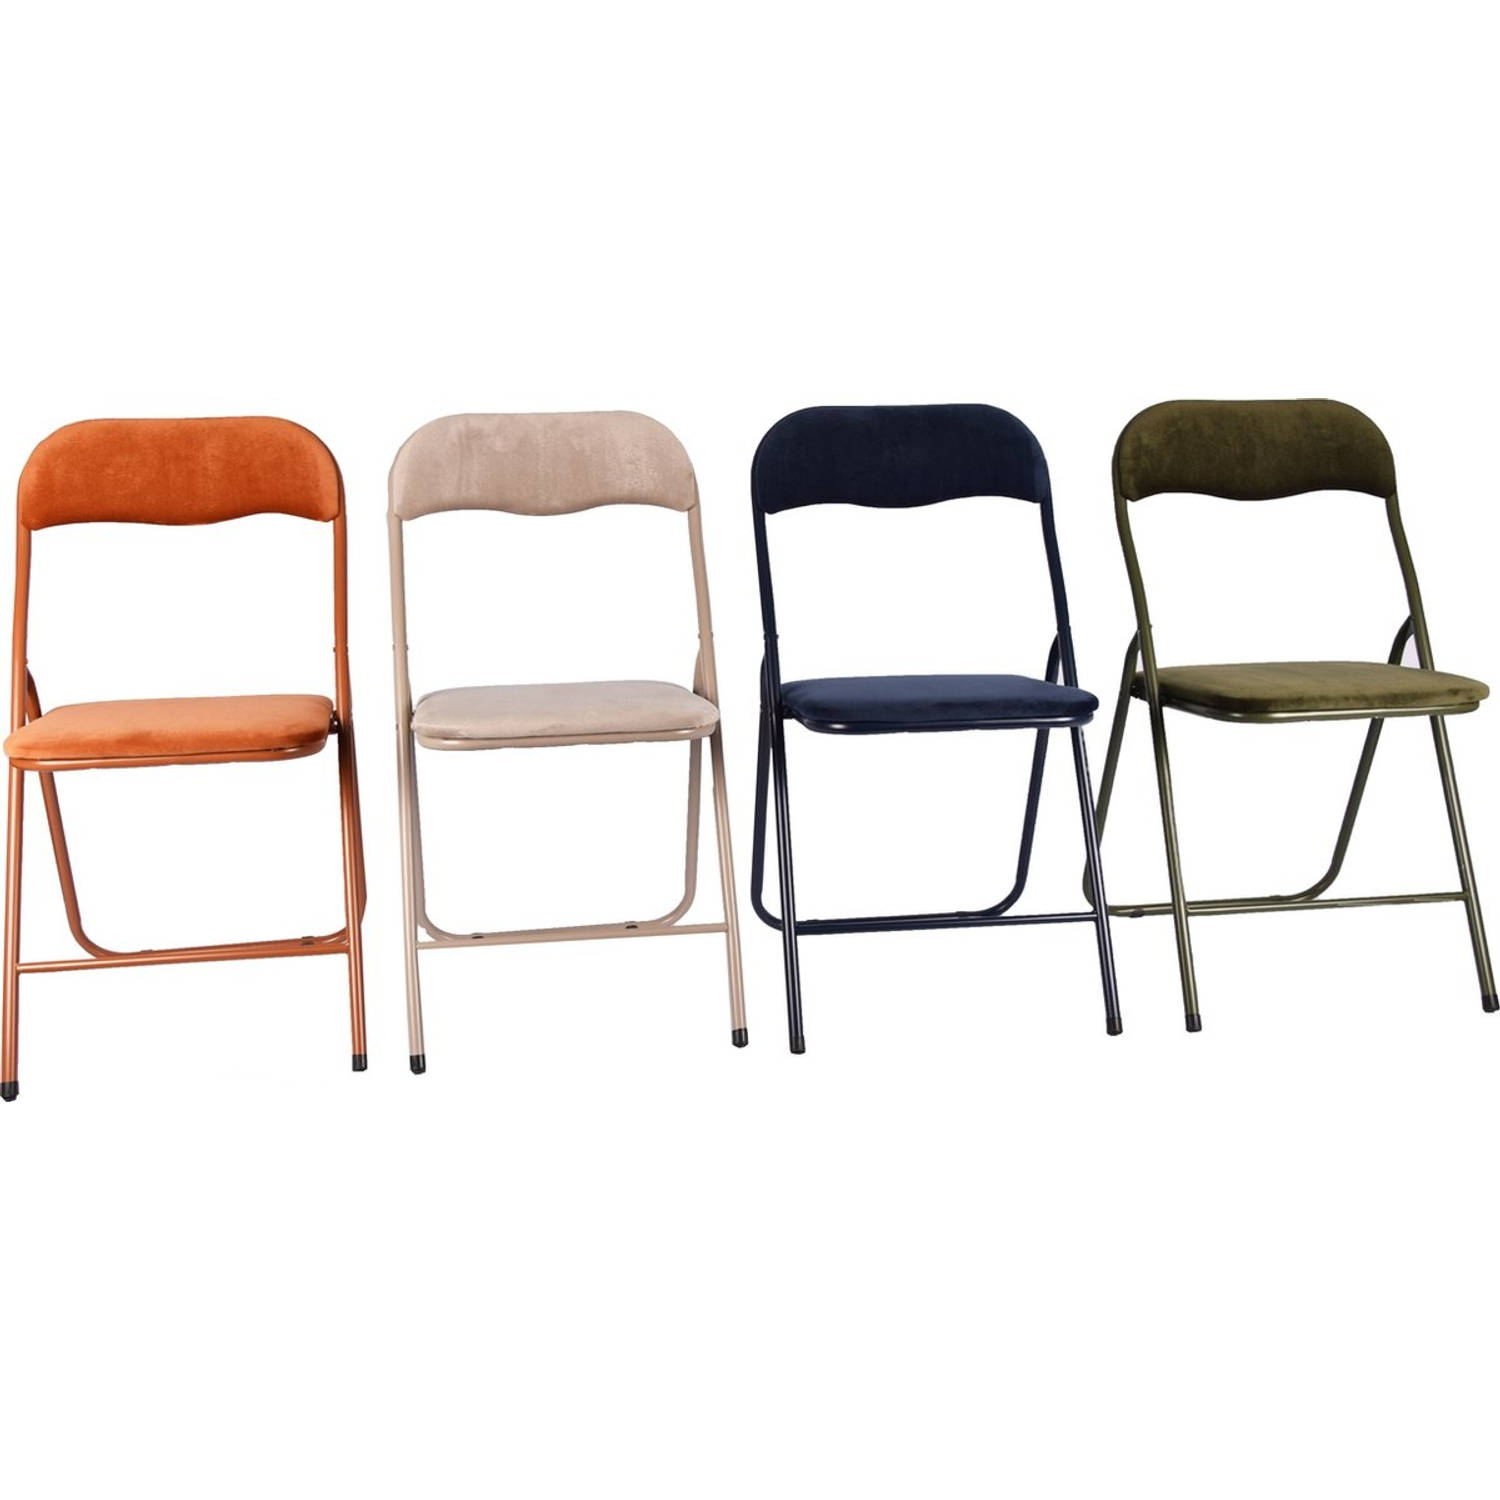 Rendezvous Dodelijk Smelten 4x Klapstoel met zithoogte van 43 cm Vouwstoel velvet zitvlak en rug  bekleed - stoel- tafelstoel - klapstoel - Velvet | Blokker